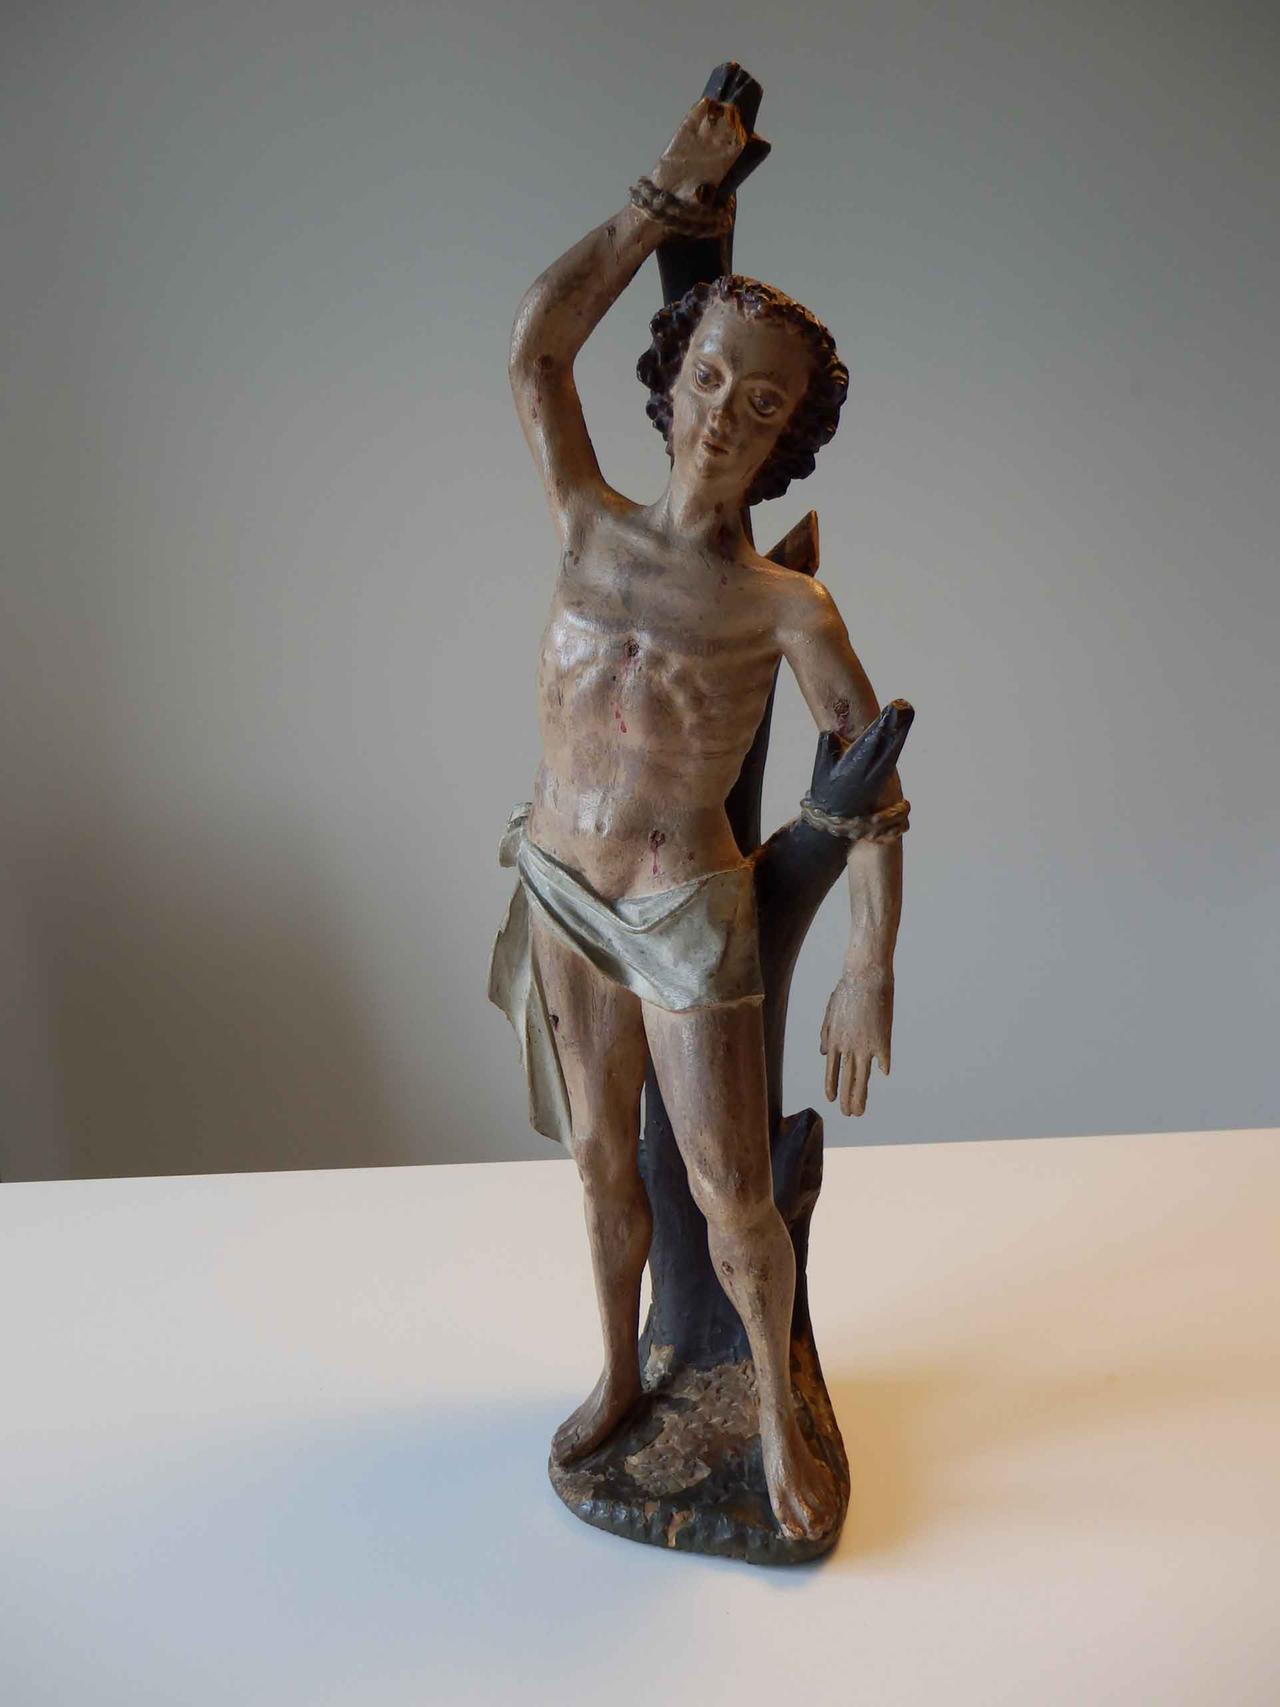 Holzskulptur des Heiligen Sebastian, der nur einen Lendenschurz trägt, an einen Baum gefesselt ist und zahlreiche Wunden an seinem Körper aufweist.